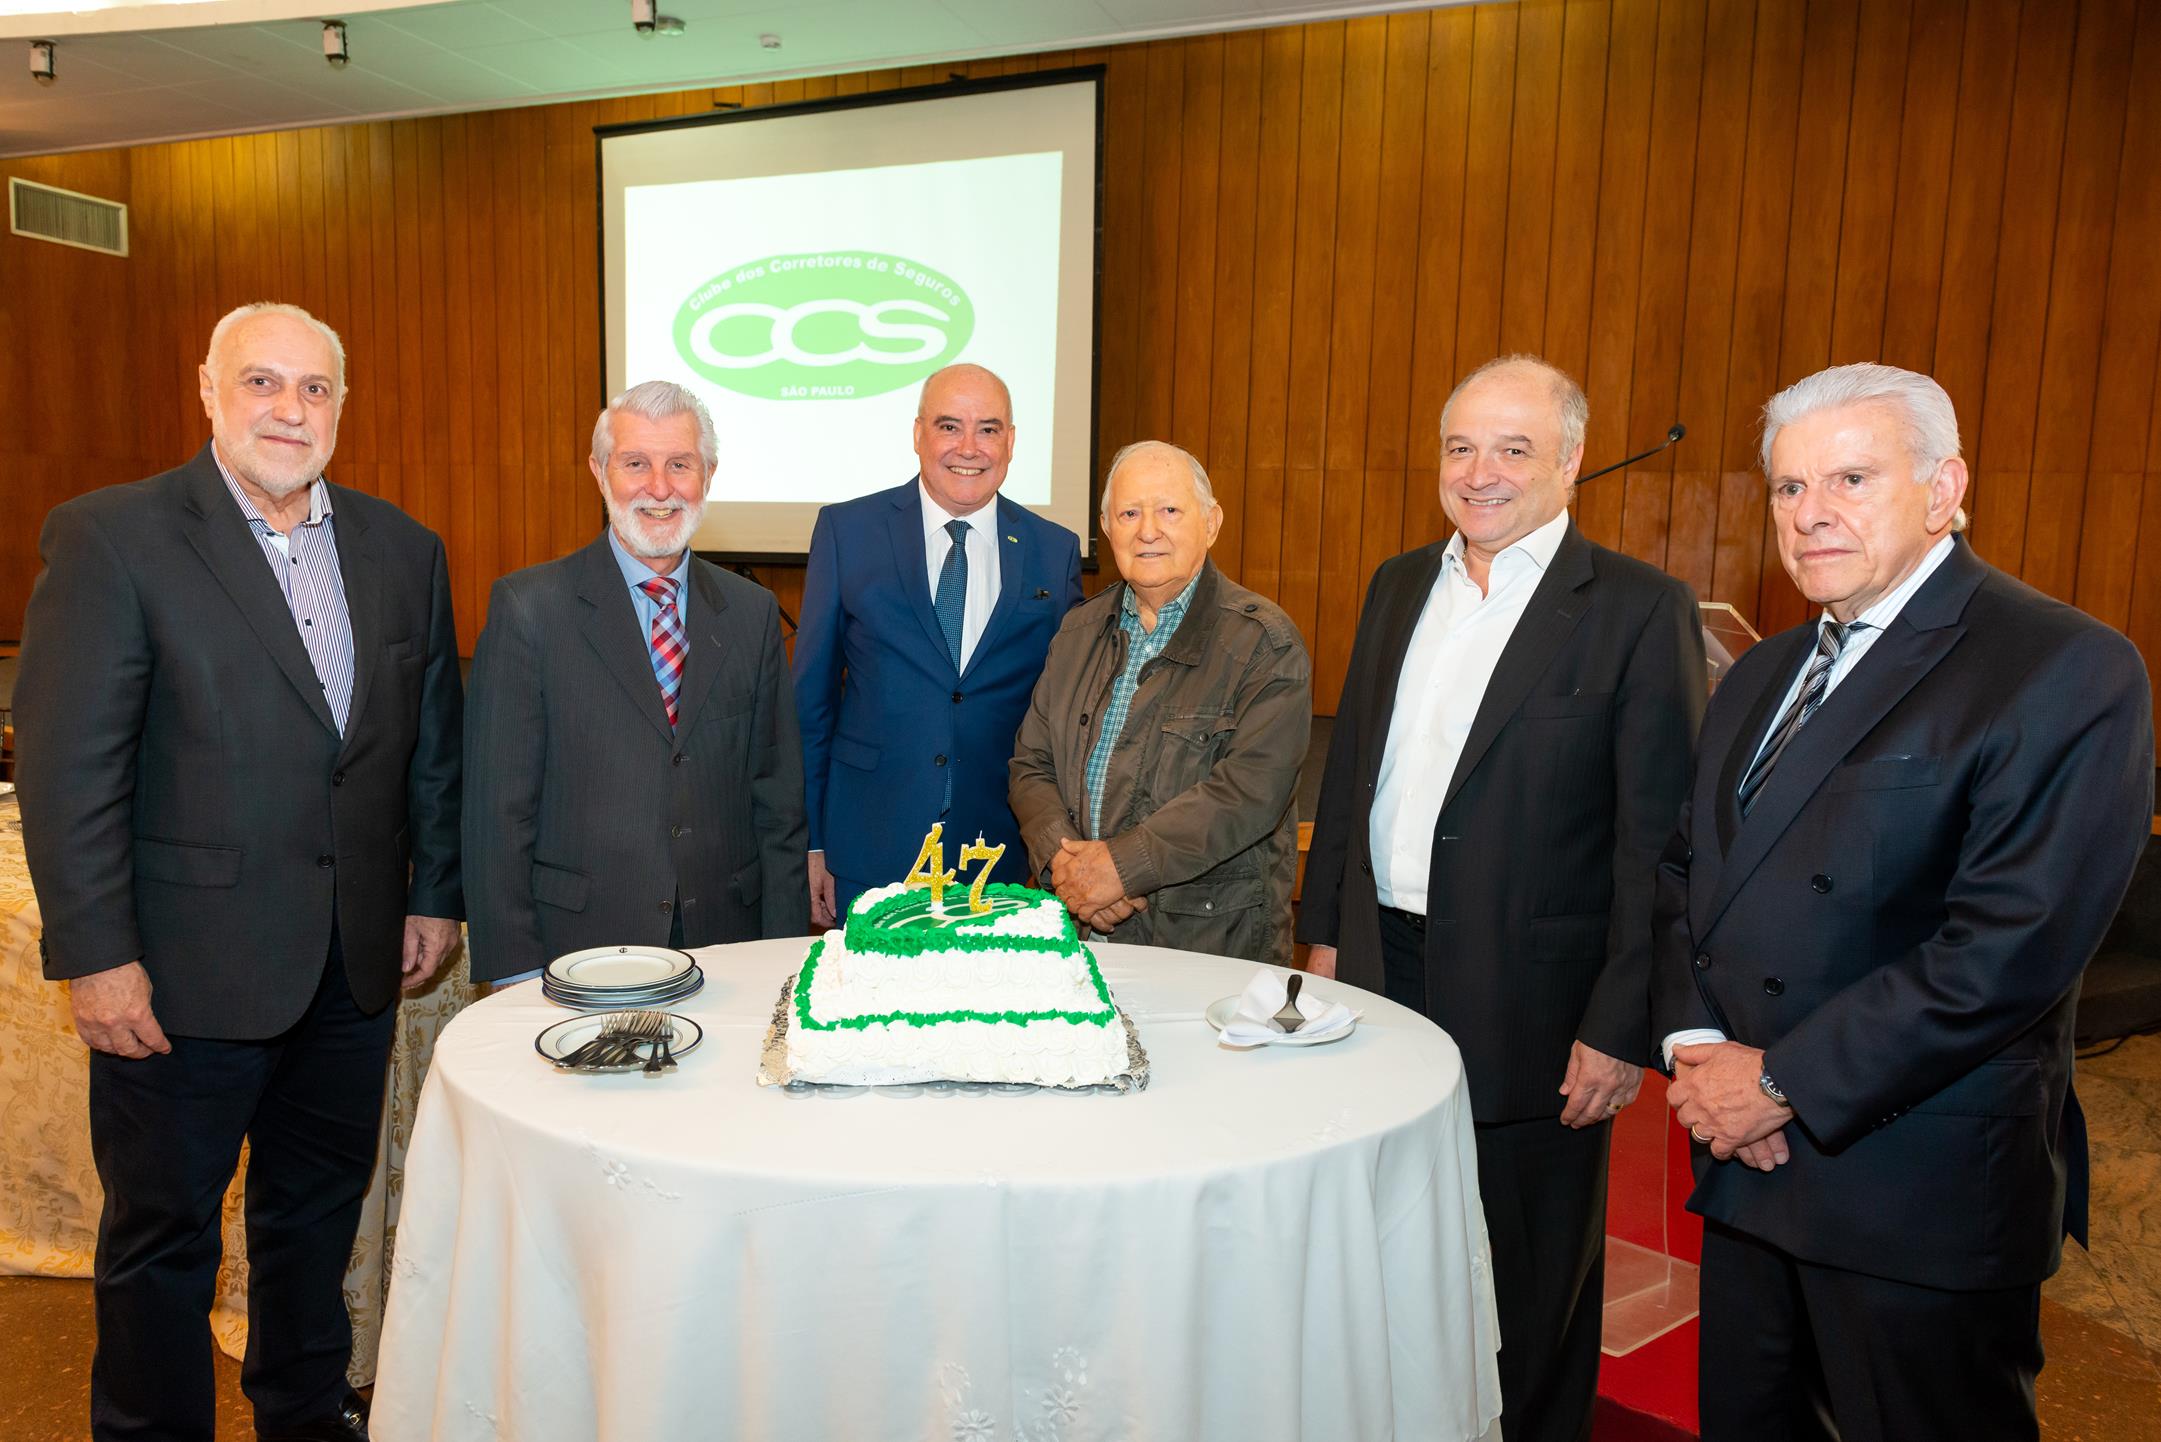 Fundadores, ex-mentores e diretoria atual comemoram aniversário de 47 anos do CCS-SP / Fotos: Antranik Photos